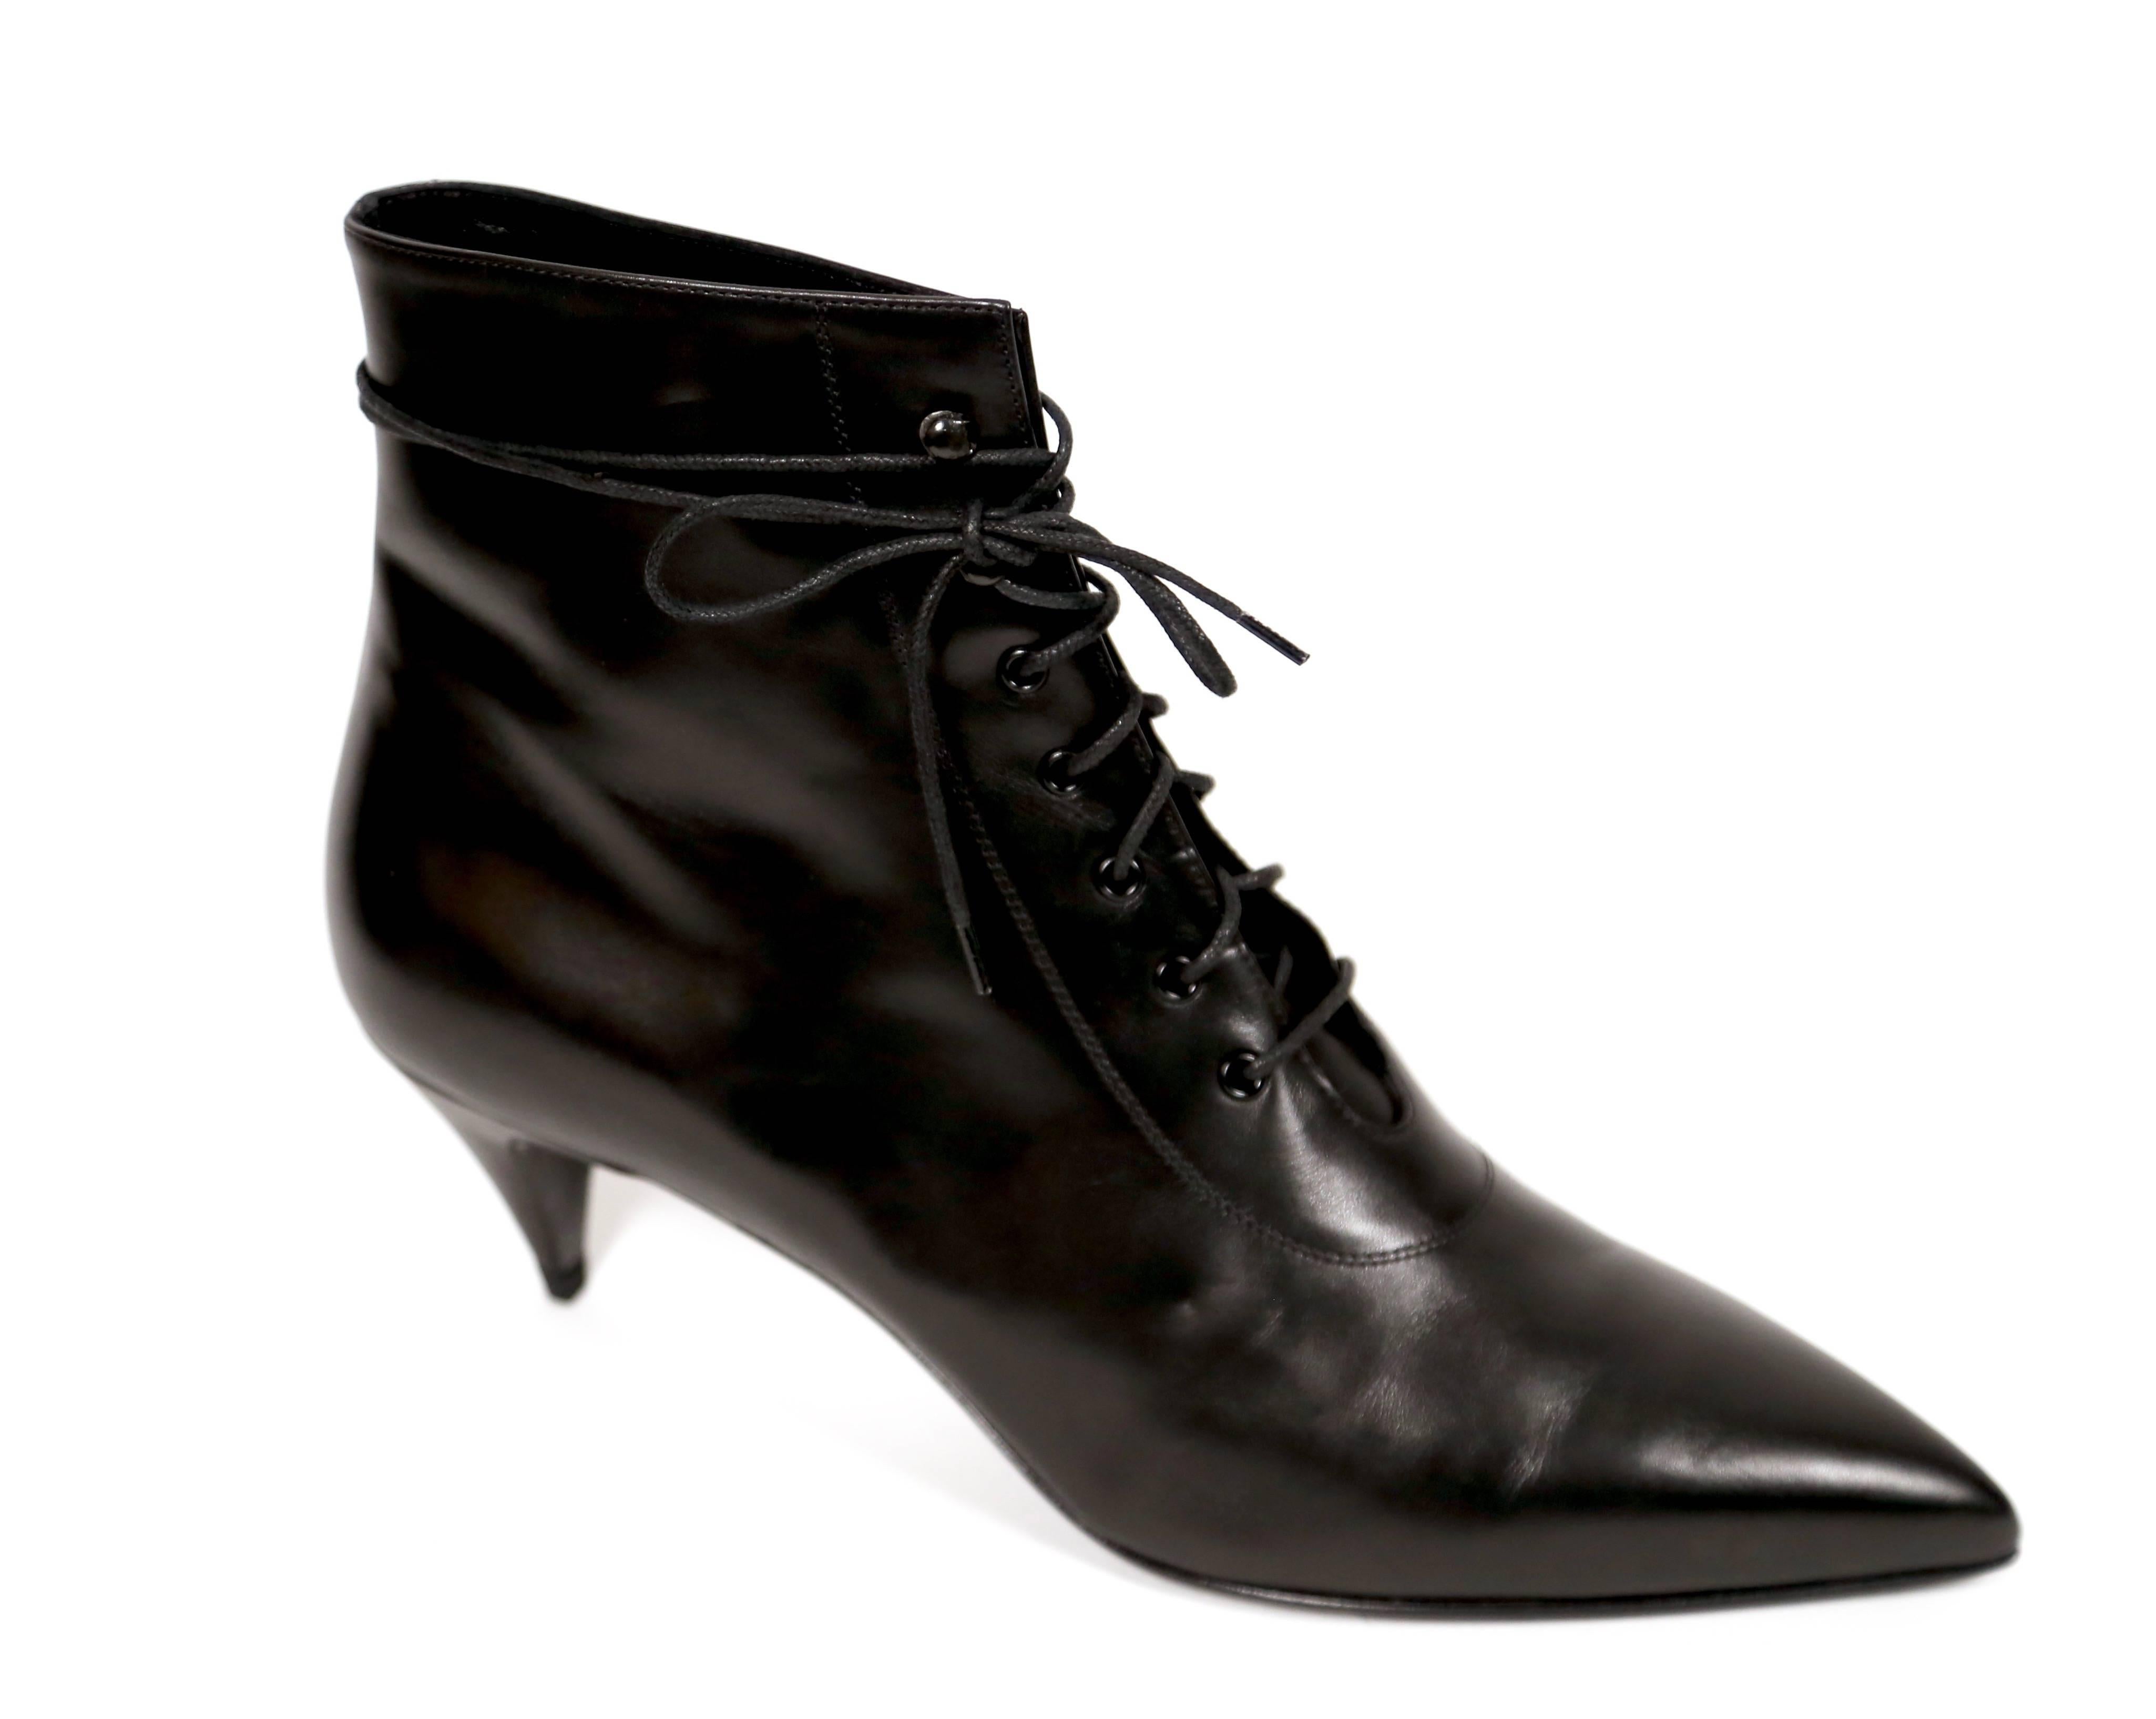 Jet black leather 'Cat 50' lace up boots designed by Saint Laurent. Size 41. 2